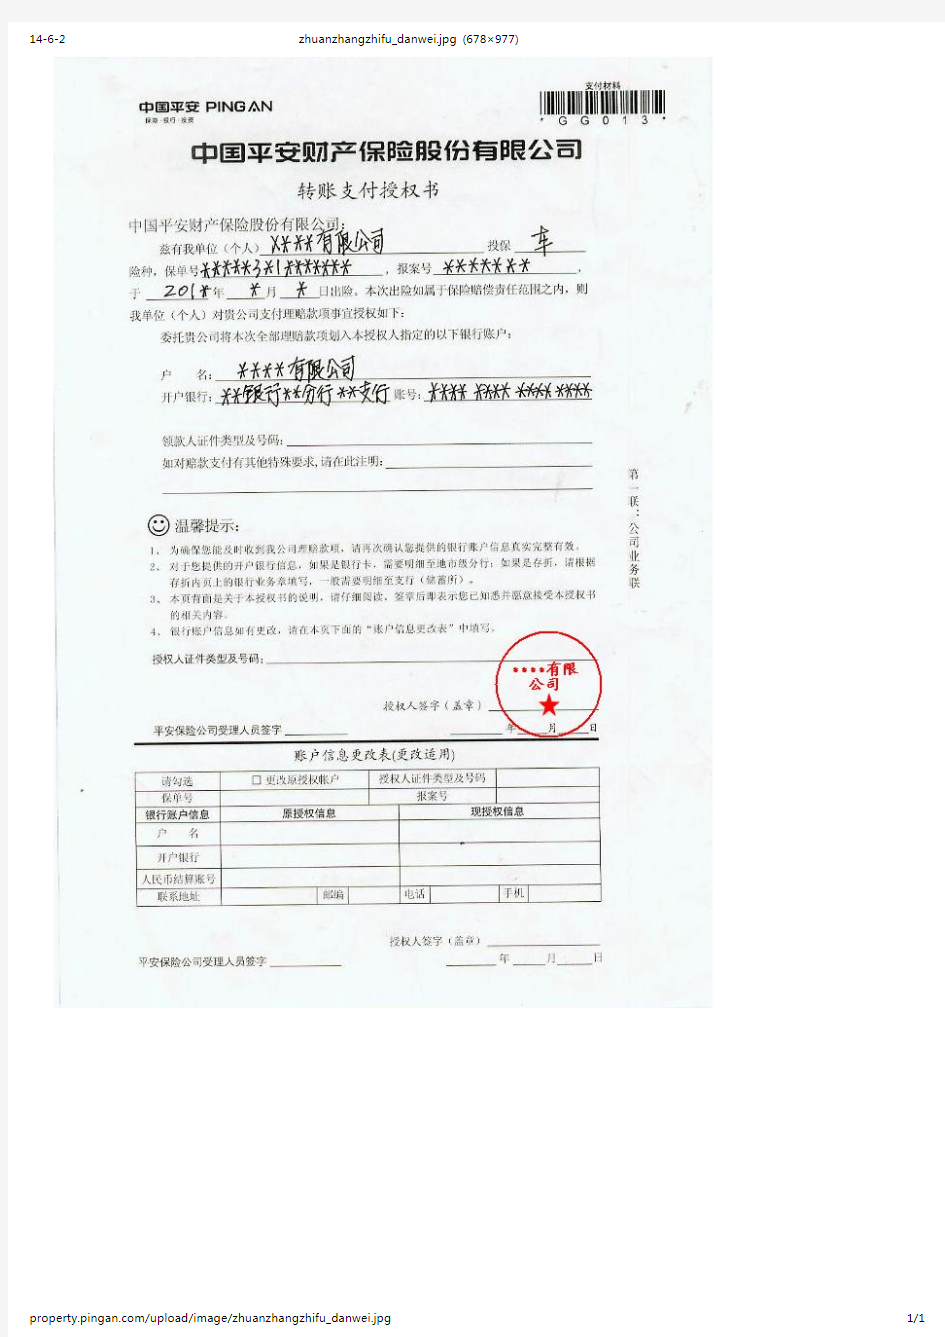 转账支付授权书单位范本-中国平安则产保险股份有限公司